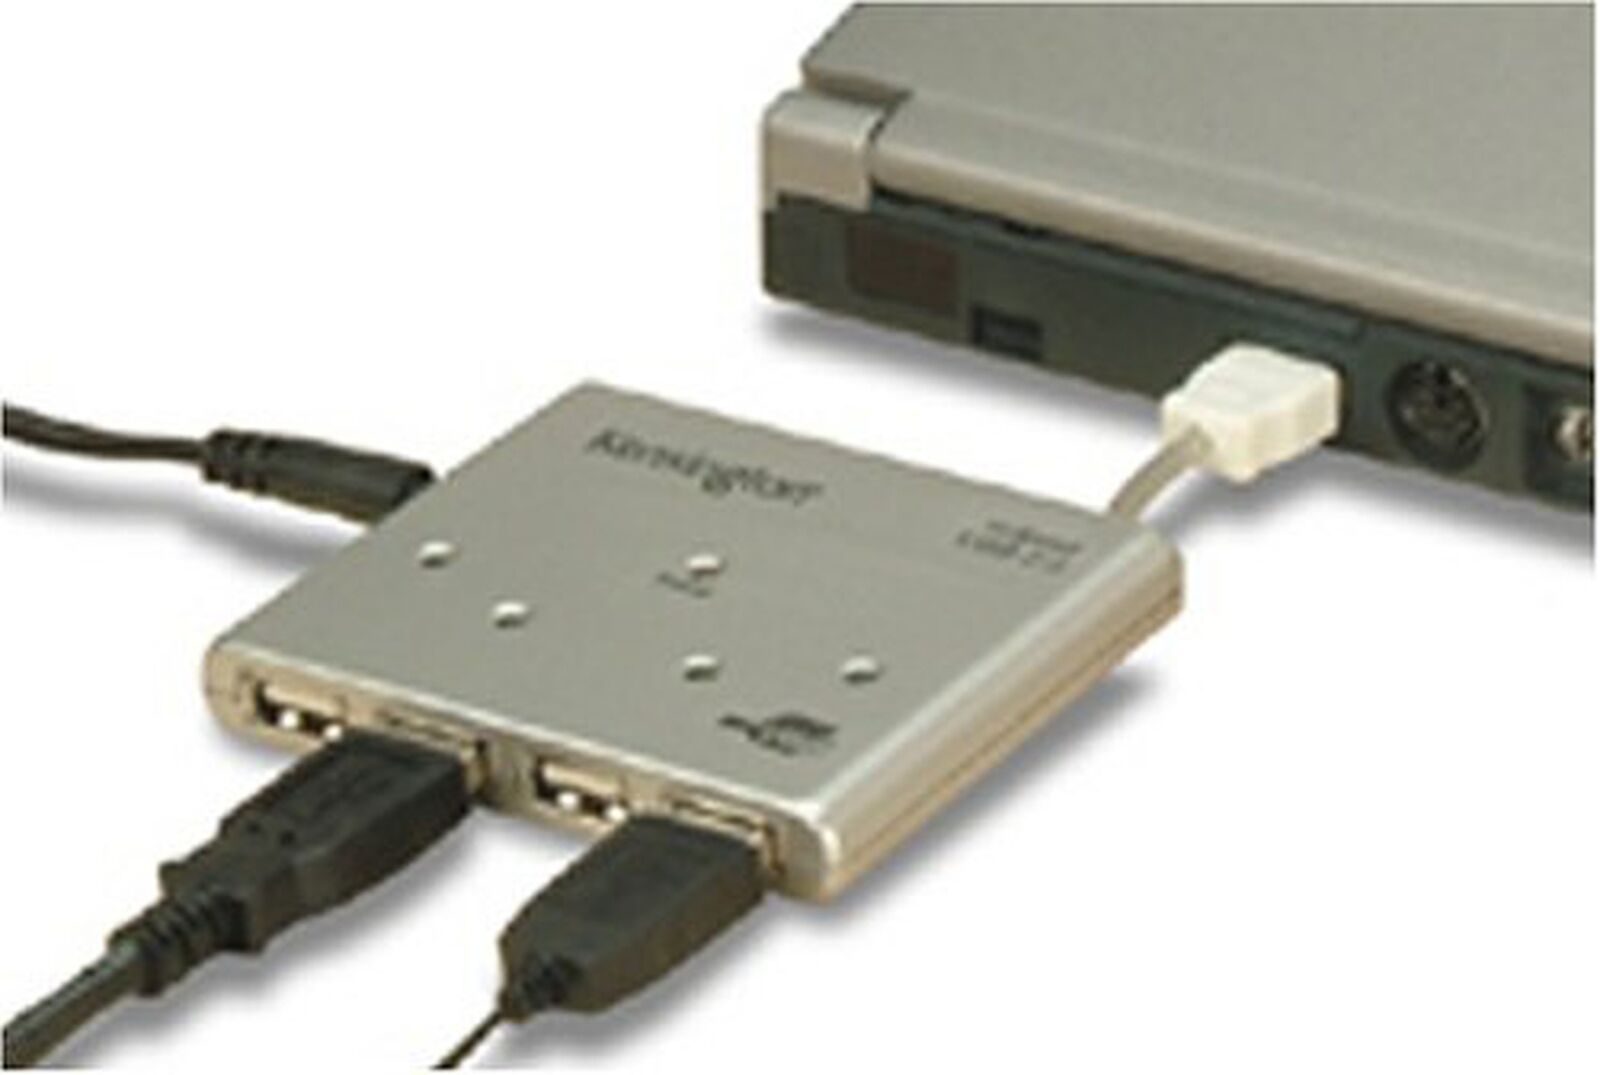 Kensington PocketHub USB 2.0 Compact 4-Port Hub (33054)